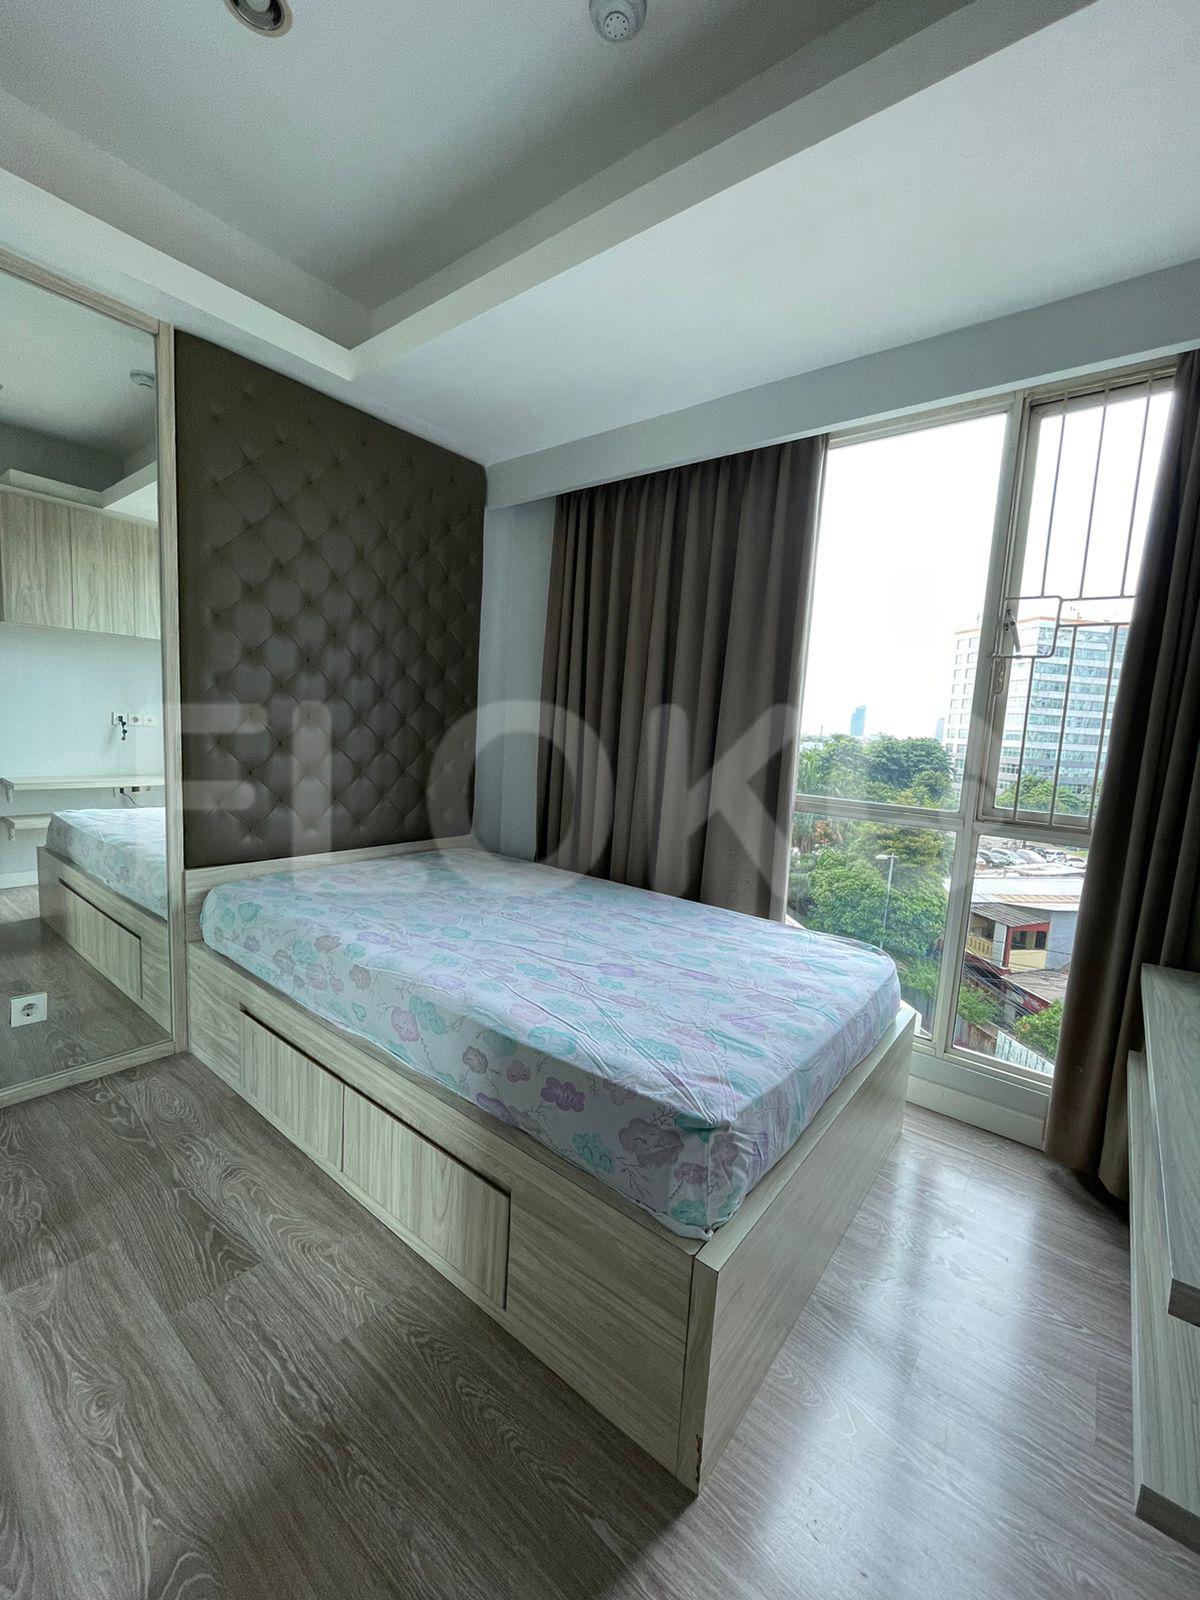 3 Bedroom on 5th Floor fte1f1 for Rent in Casa Grande